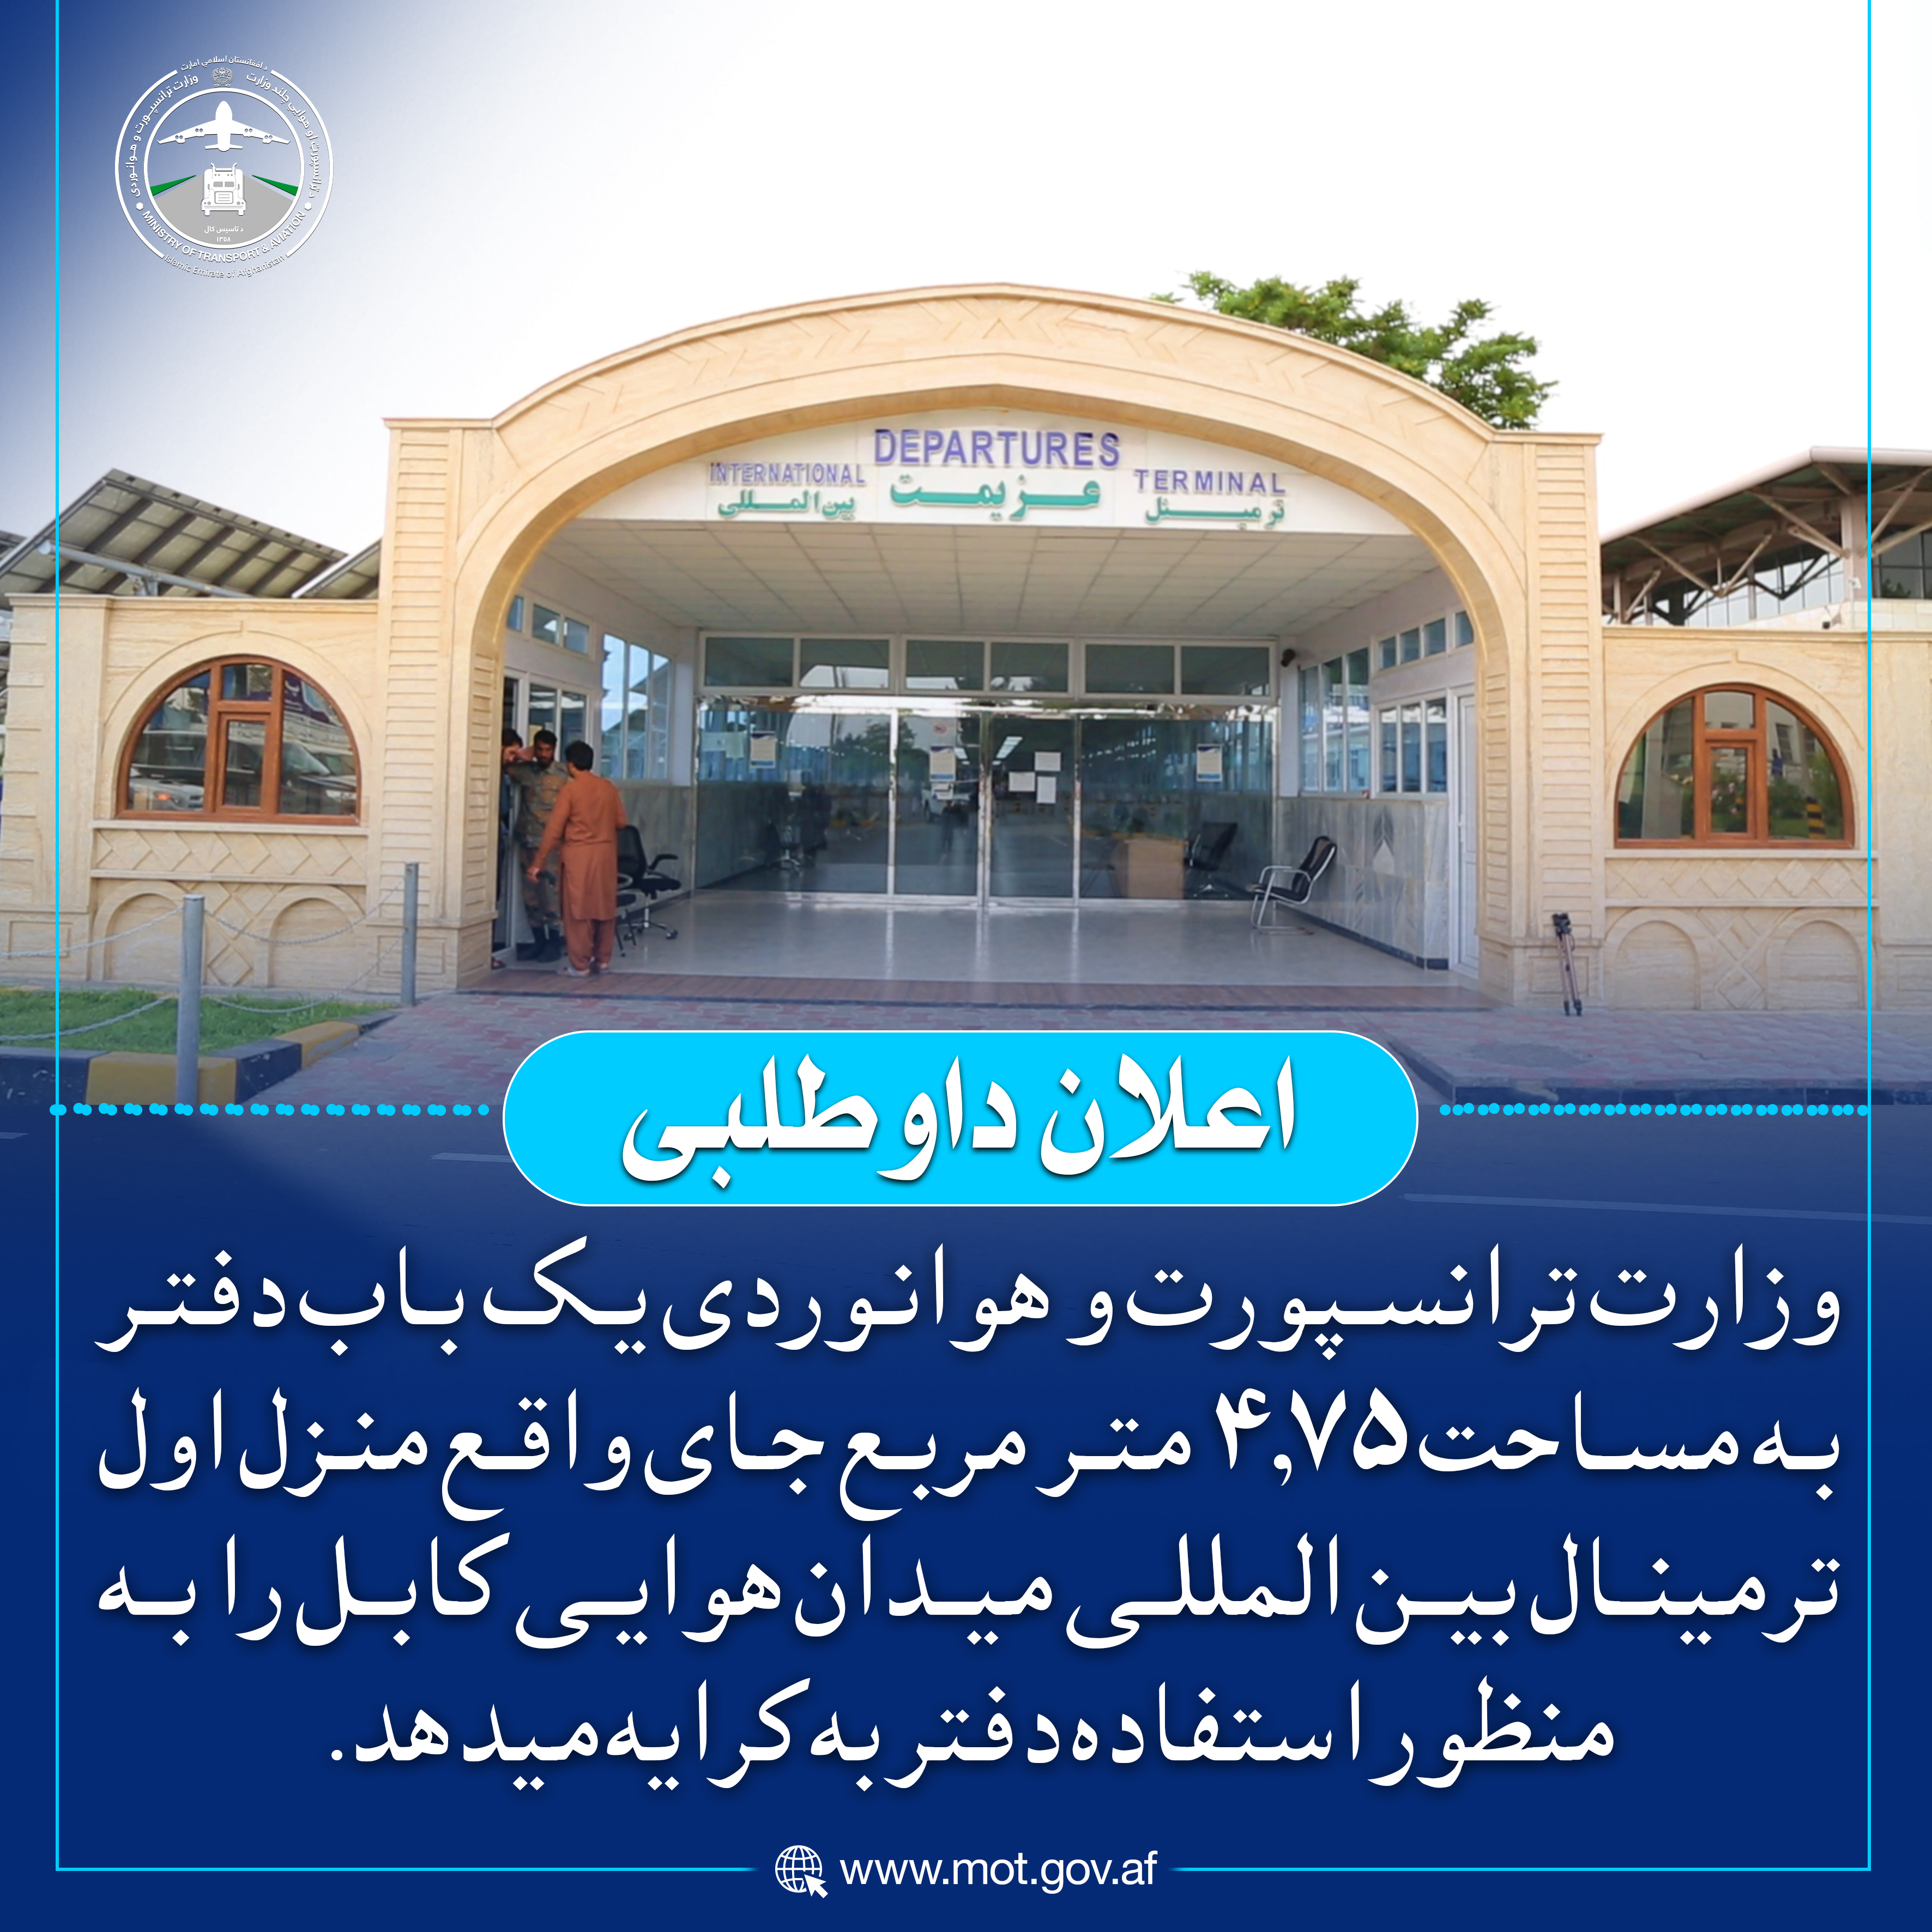 وزارت ترانسپورت و هوانوردی یک باب دفتر به مساحت ۴.۷۵ متر مربع جای واقع منزل اول ترمینال بین المللی میدان هوایی کابل را به منظور استفاده دفتر به کرایه میدهد.